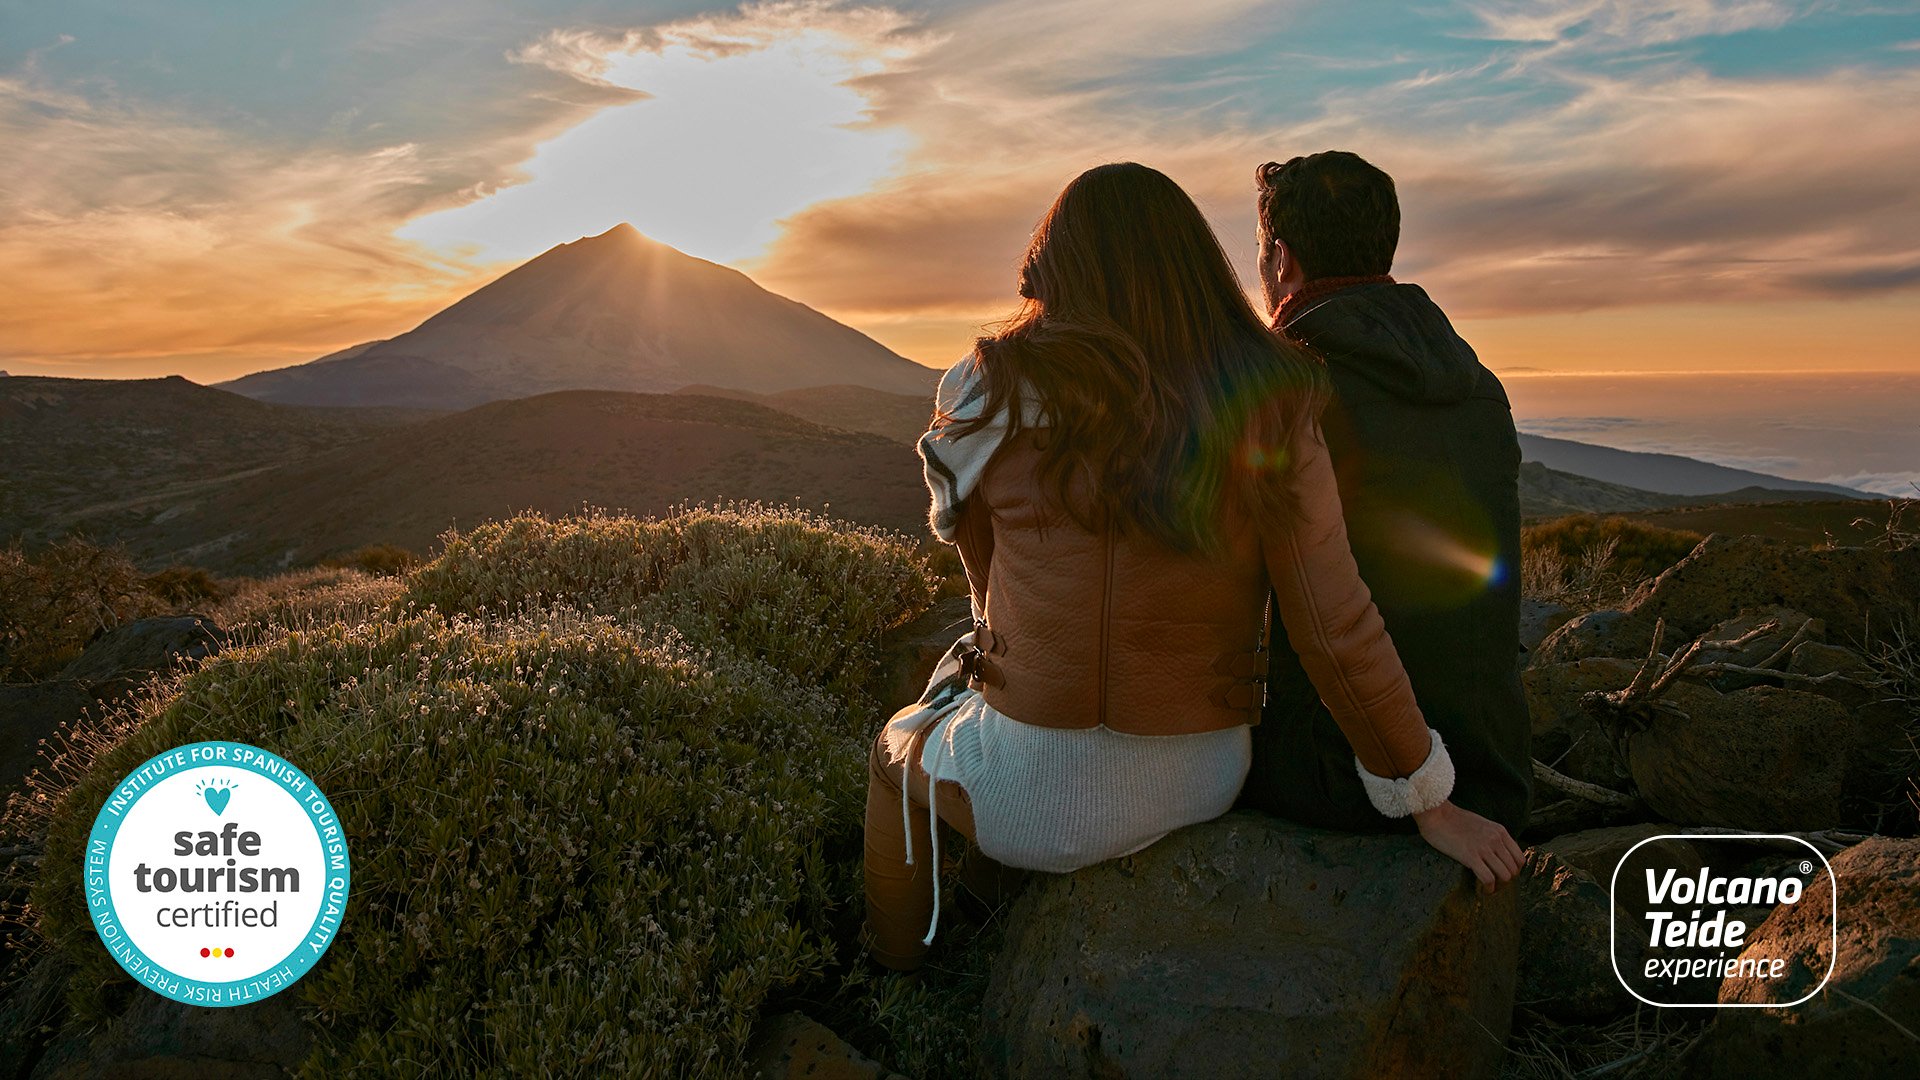 Keurmerk Safe Tourism Certified van Volcano Teide